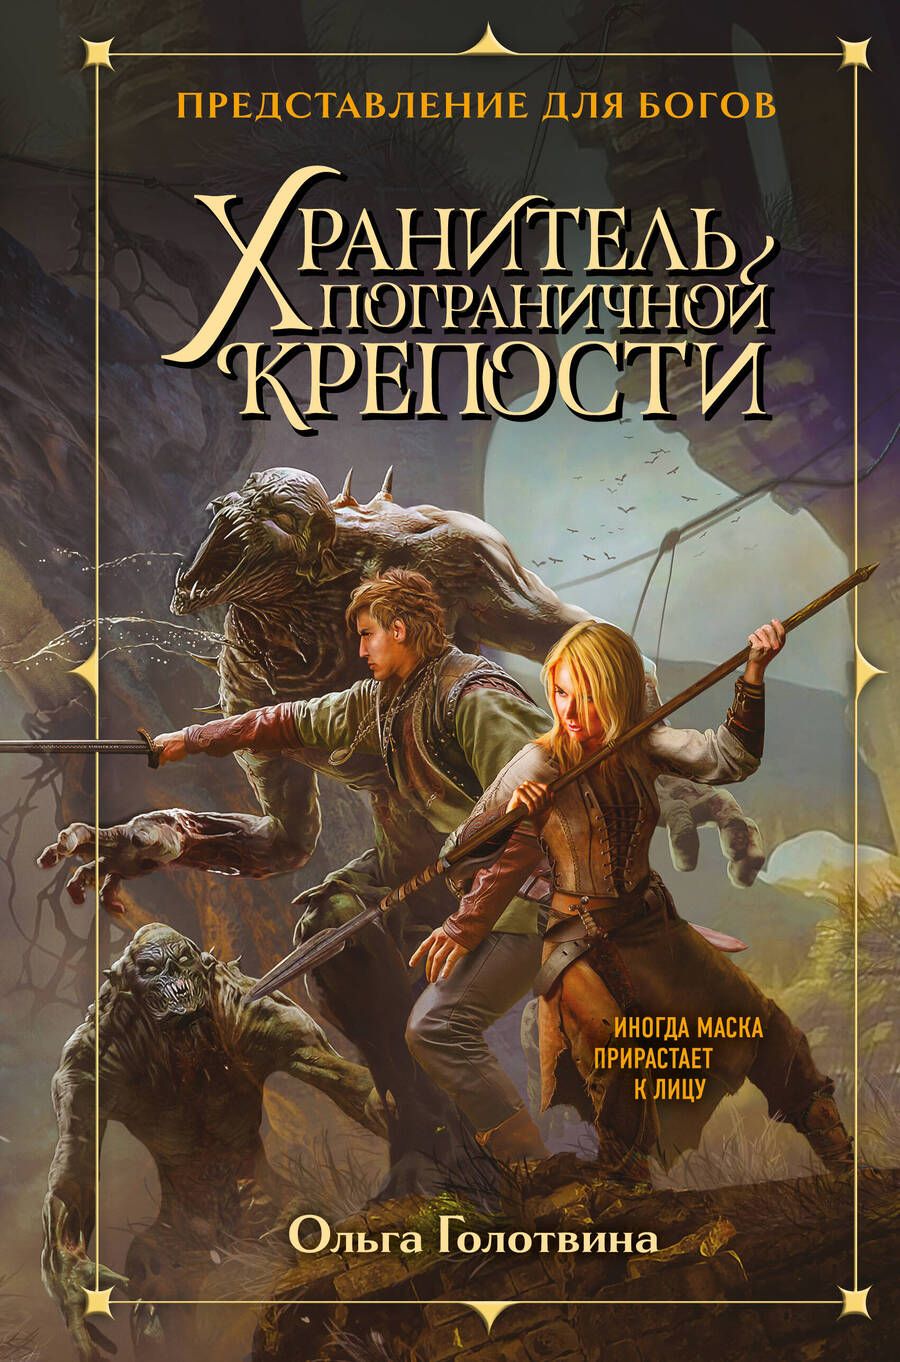 Обложка книги "Голотвина: Хранитель пограничной крепости"